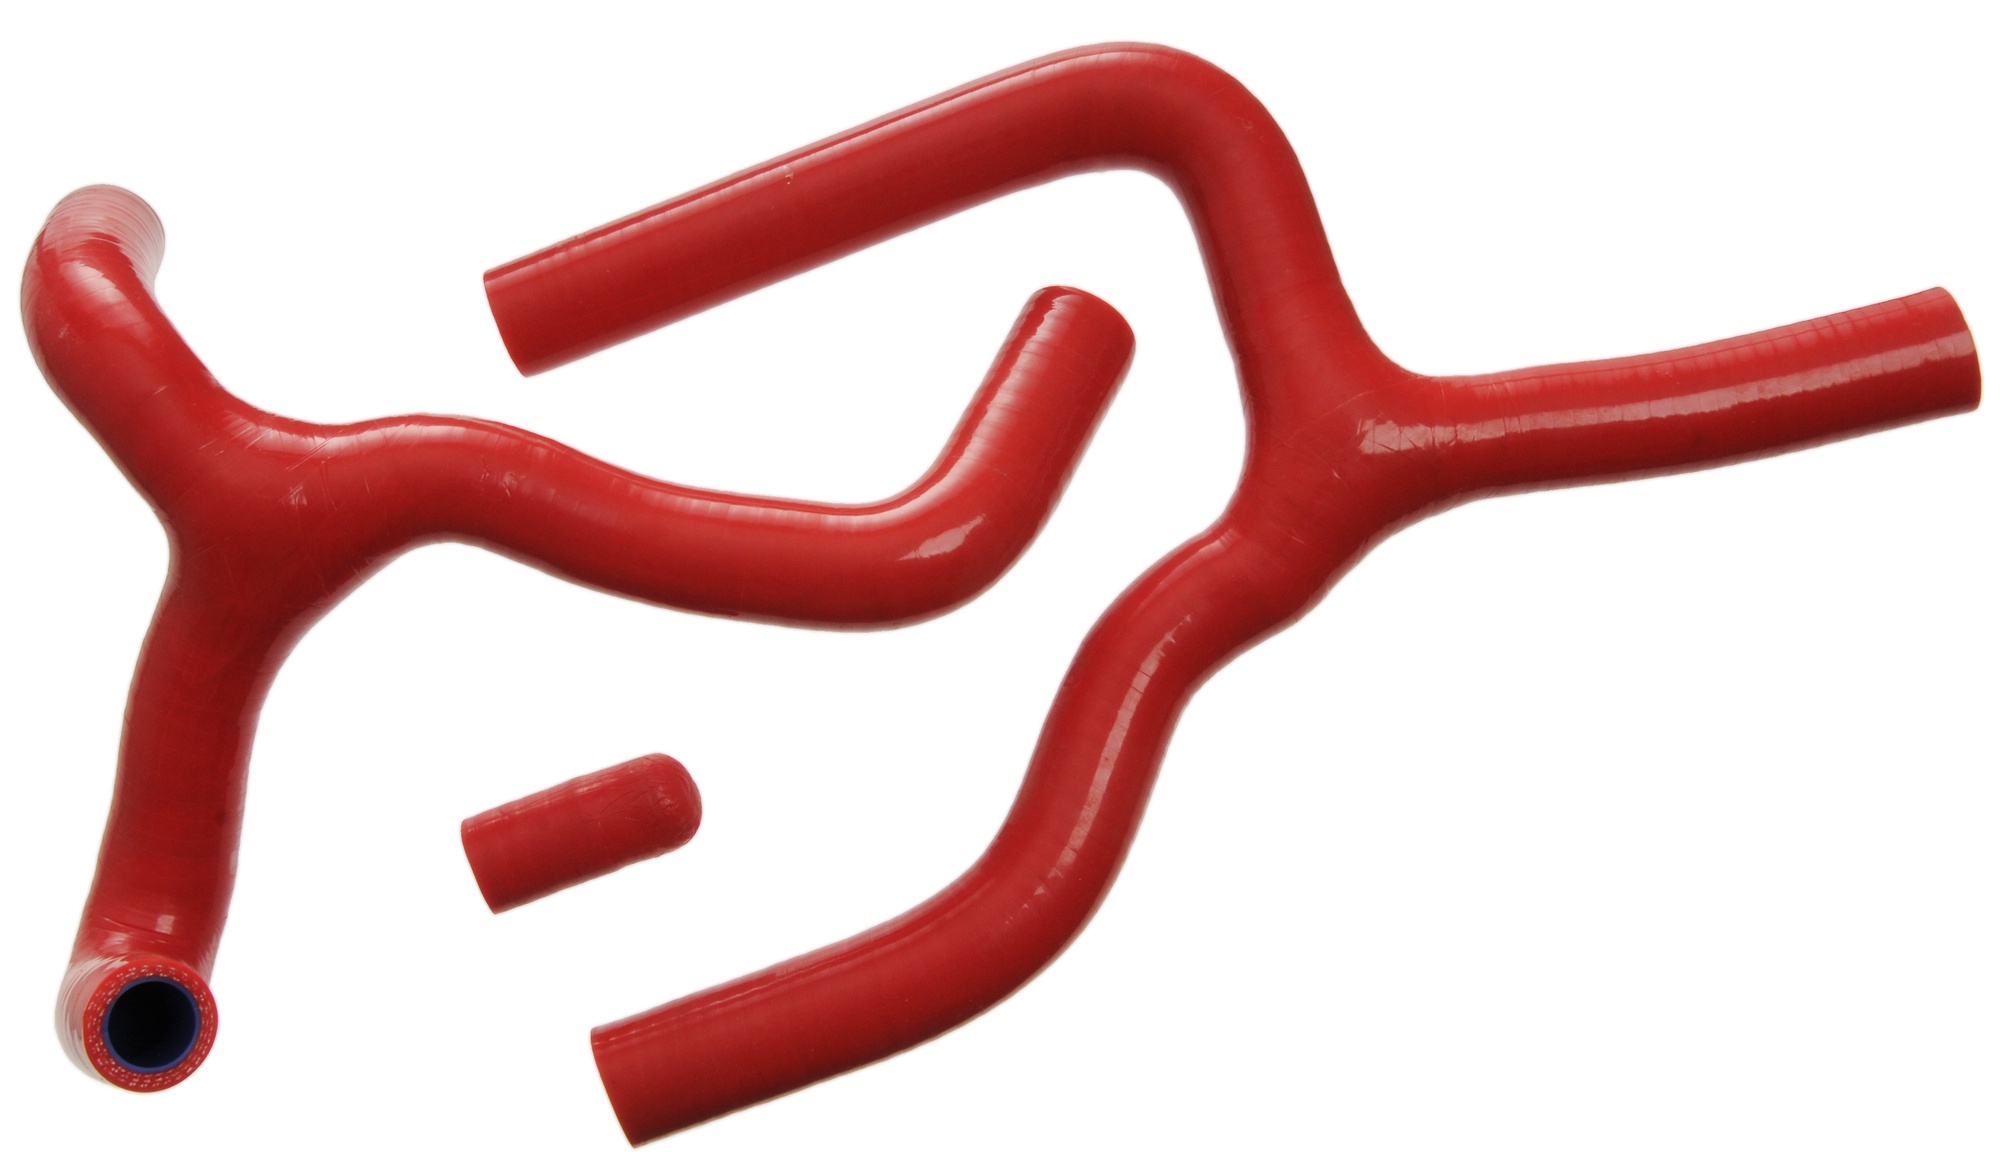 Obrázek produktu sada silikonových hadic vodního chlazení, červená 3ks WM009 red